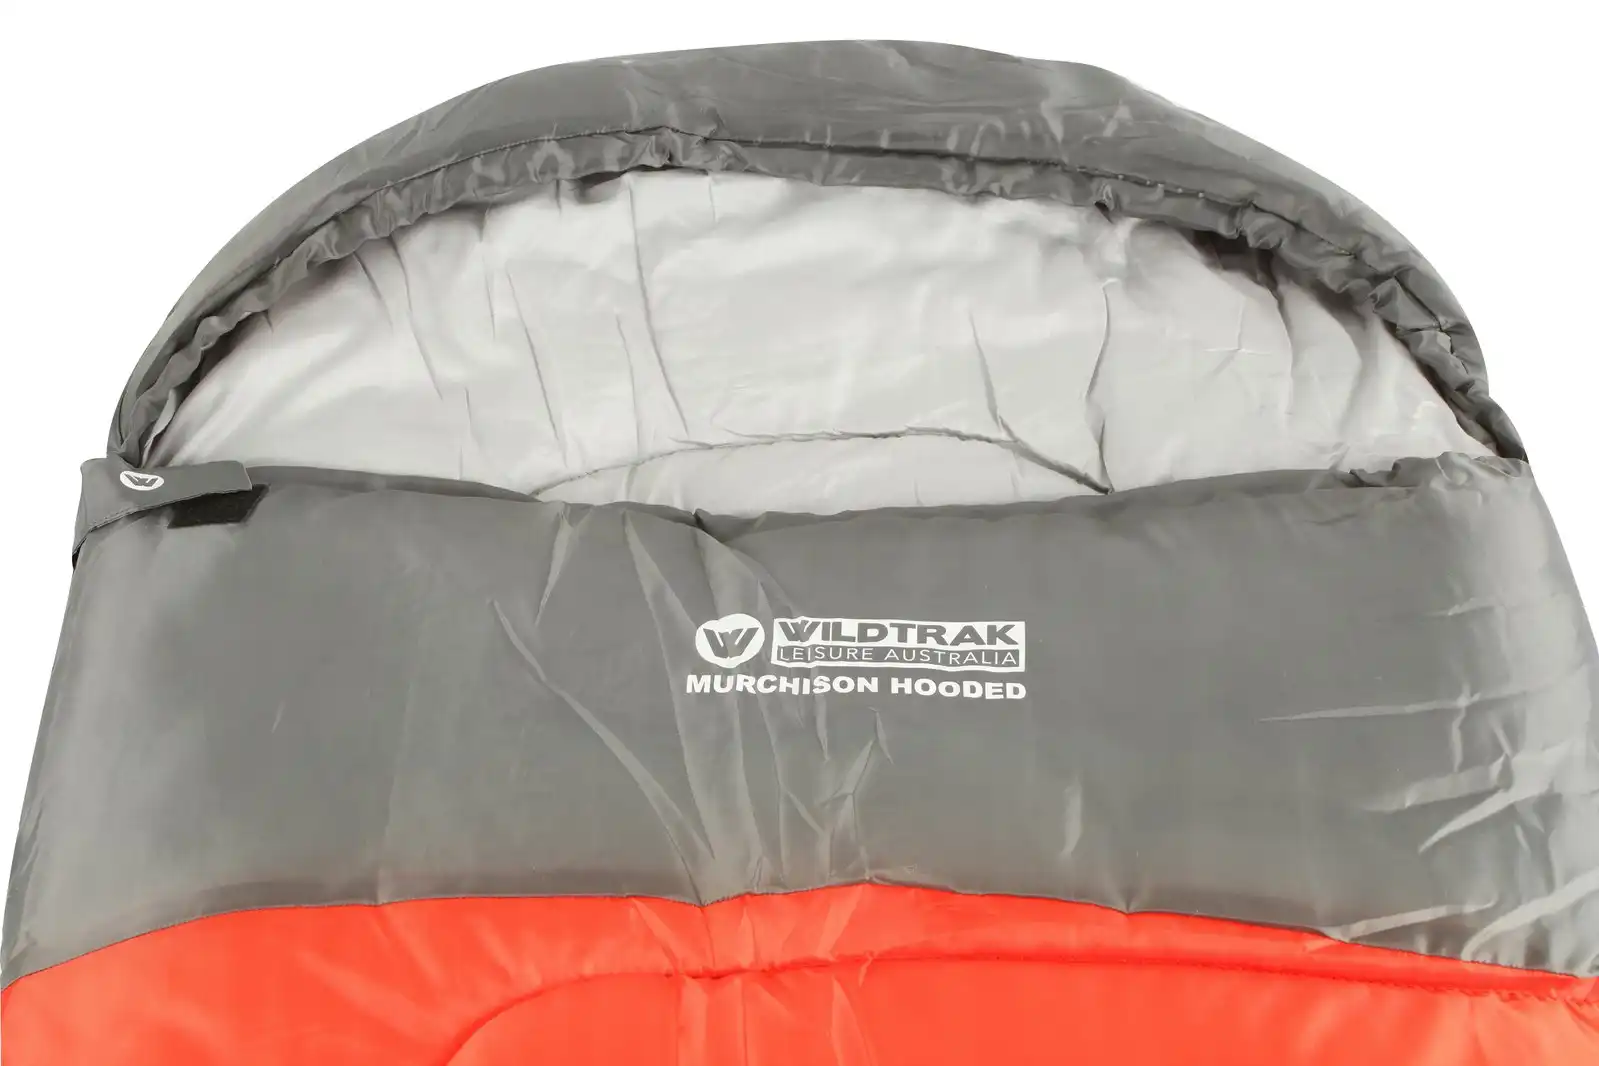 Wildtrak Murchison 230x75cm Hooded Sleeping Bag Thermal Camping Sleeper Red